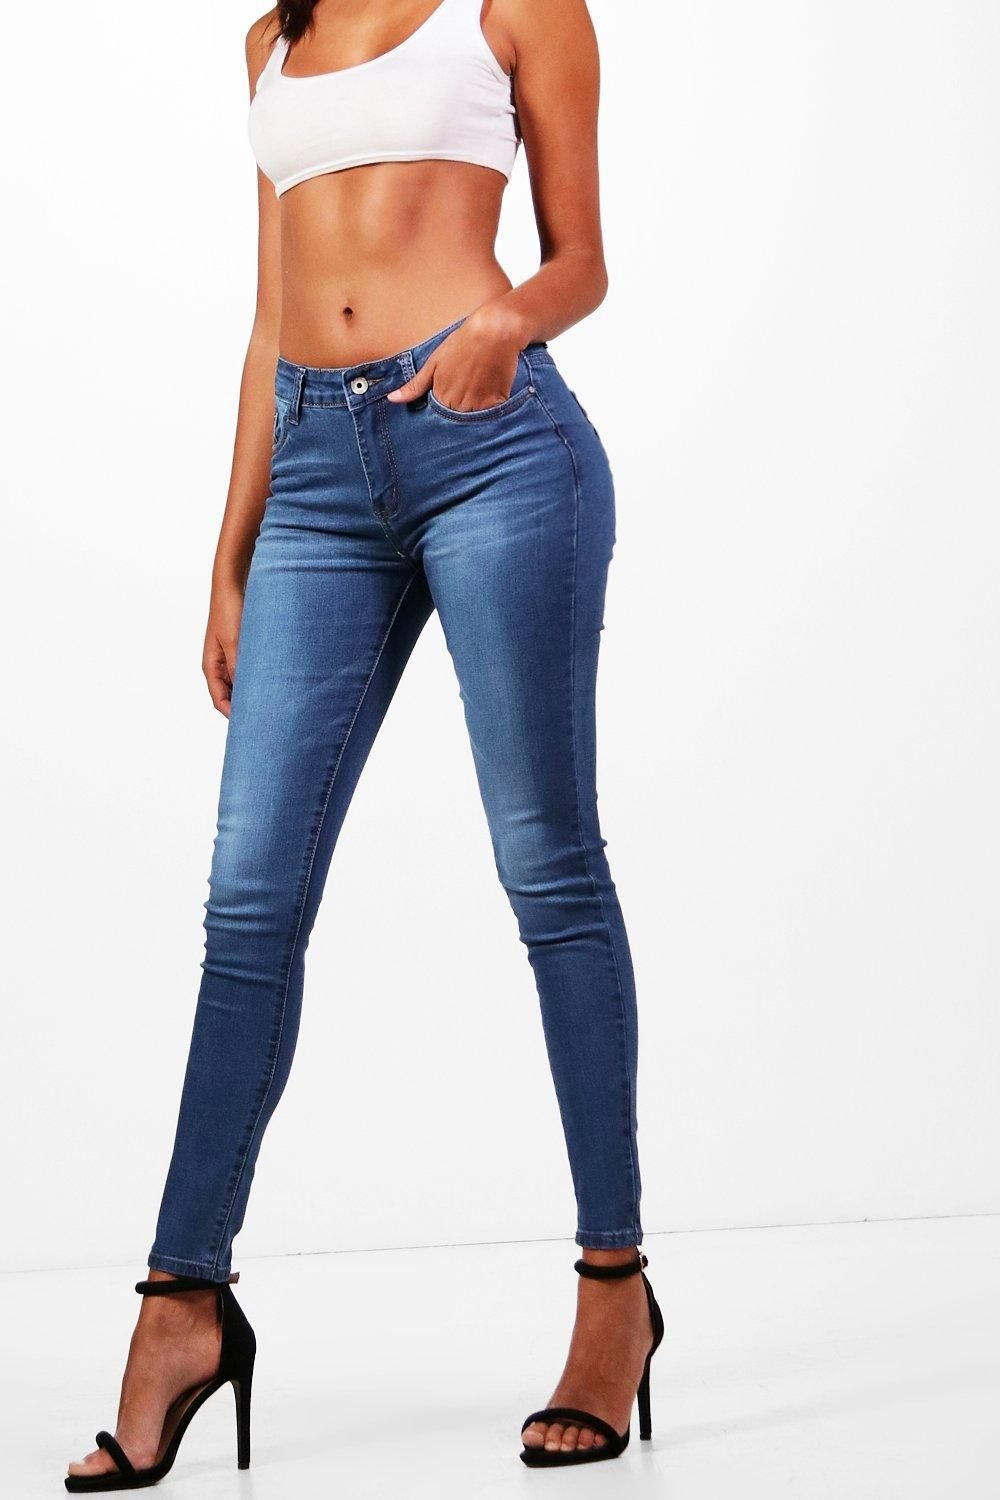 Обтянутые джинсы женские. Палома Силва Jeans. Джинсы в обтяжку женские. Джинсы в облипку. Облегающие джинсы.